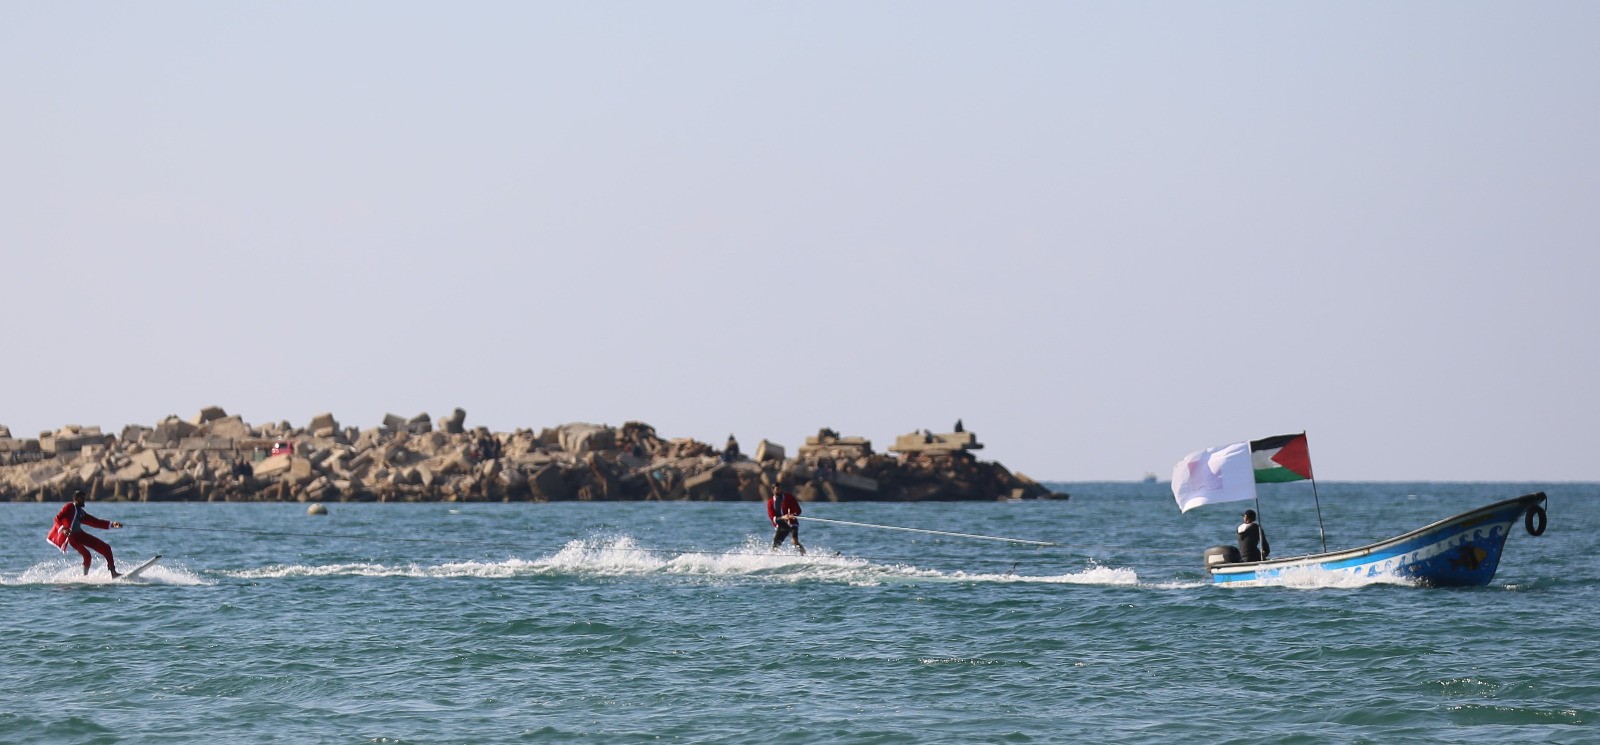 الاتحاد الفلسطيني للشراع والتجديف ينظّم فعالية للتزلّج على شاطئ بحر غزّة 5.jpg